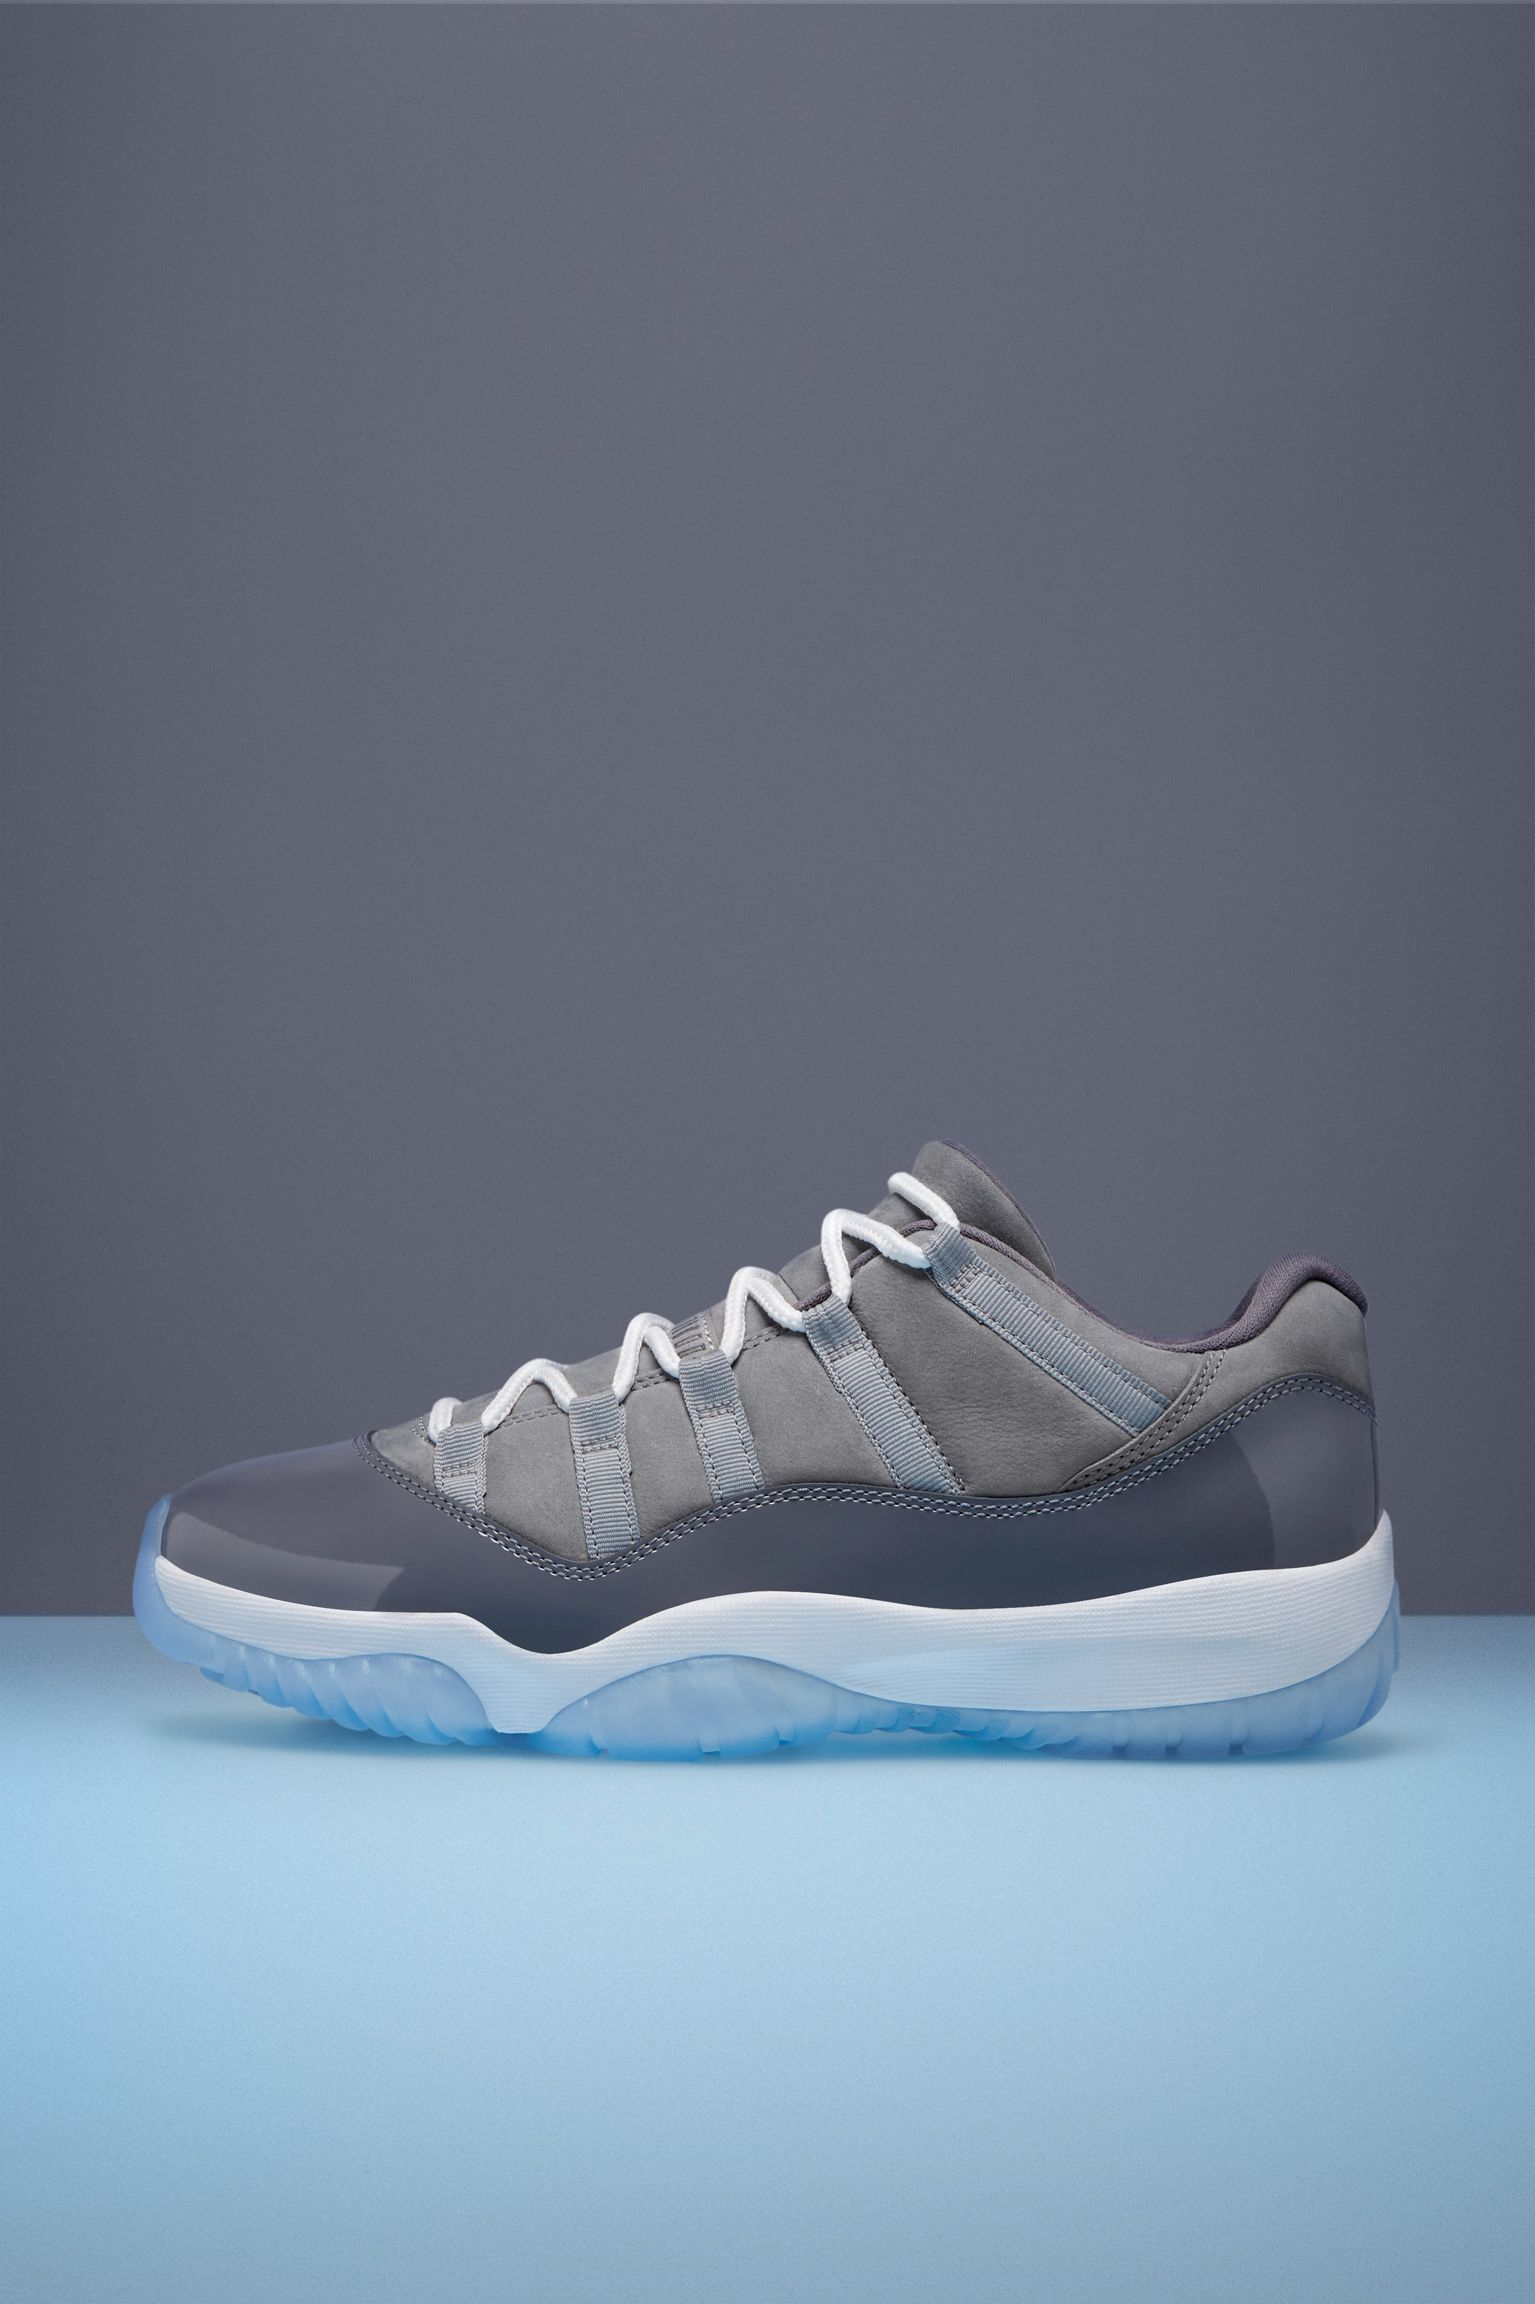 Air Jordan 11 Low 'Cool Grey' Release Date. Nike SNKRS